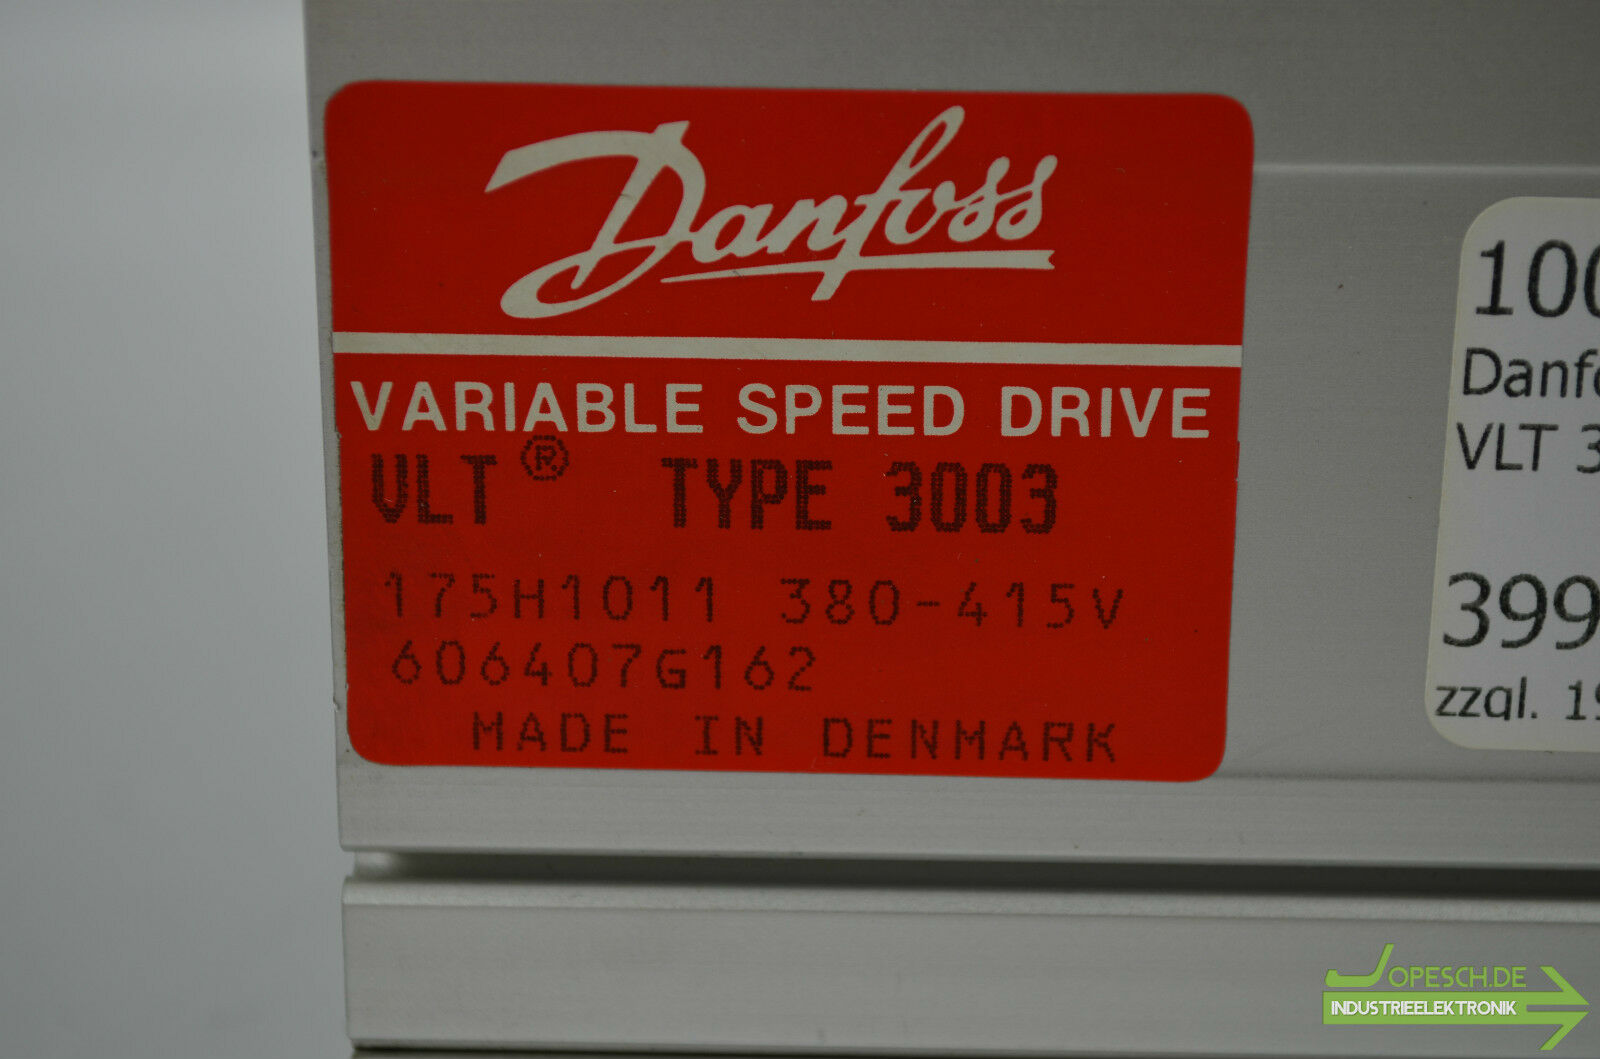 Danfoss VLT3003 175H1011 380-415V